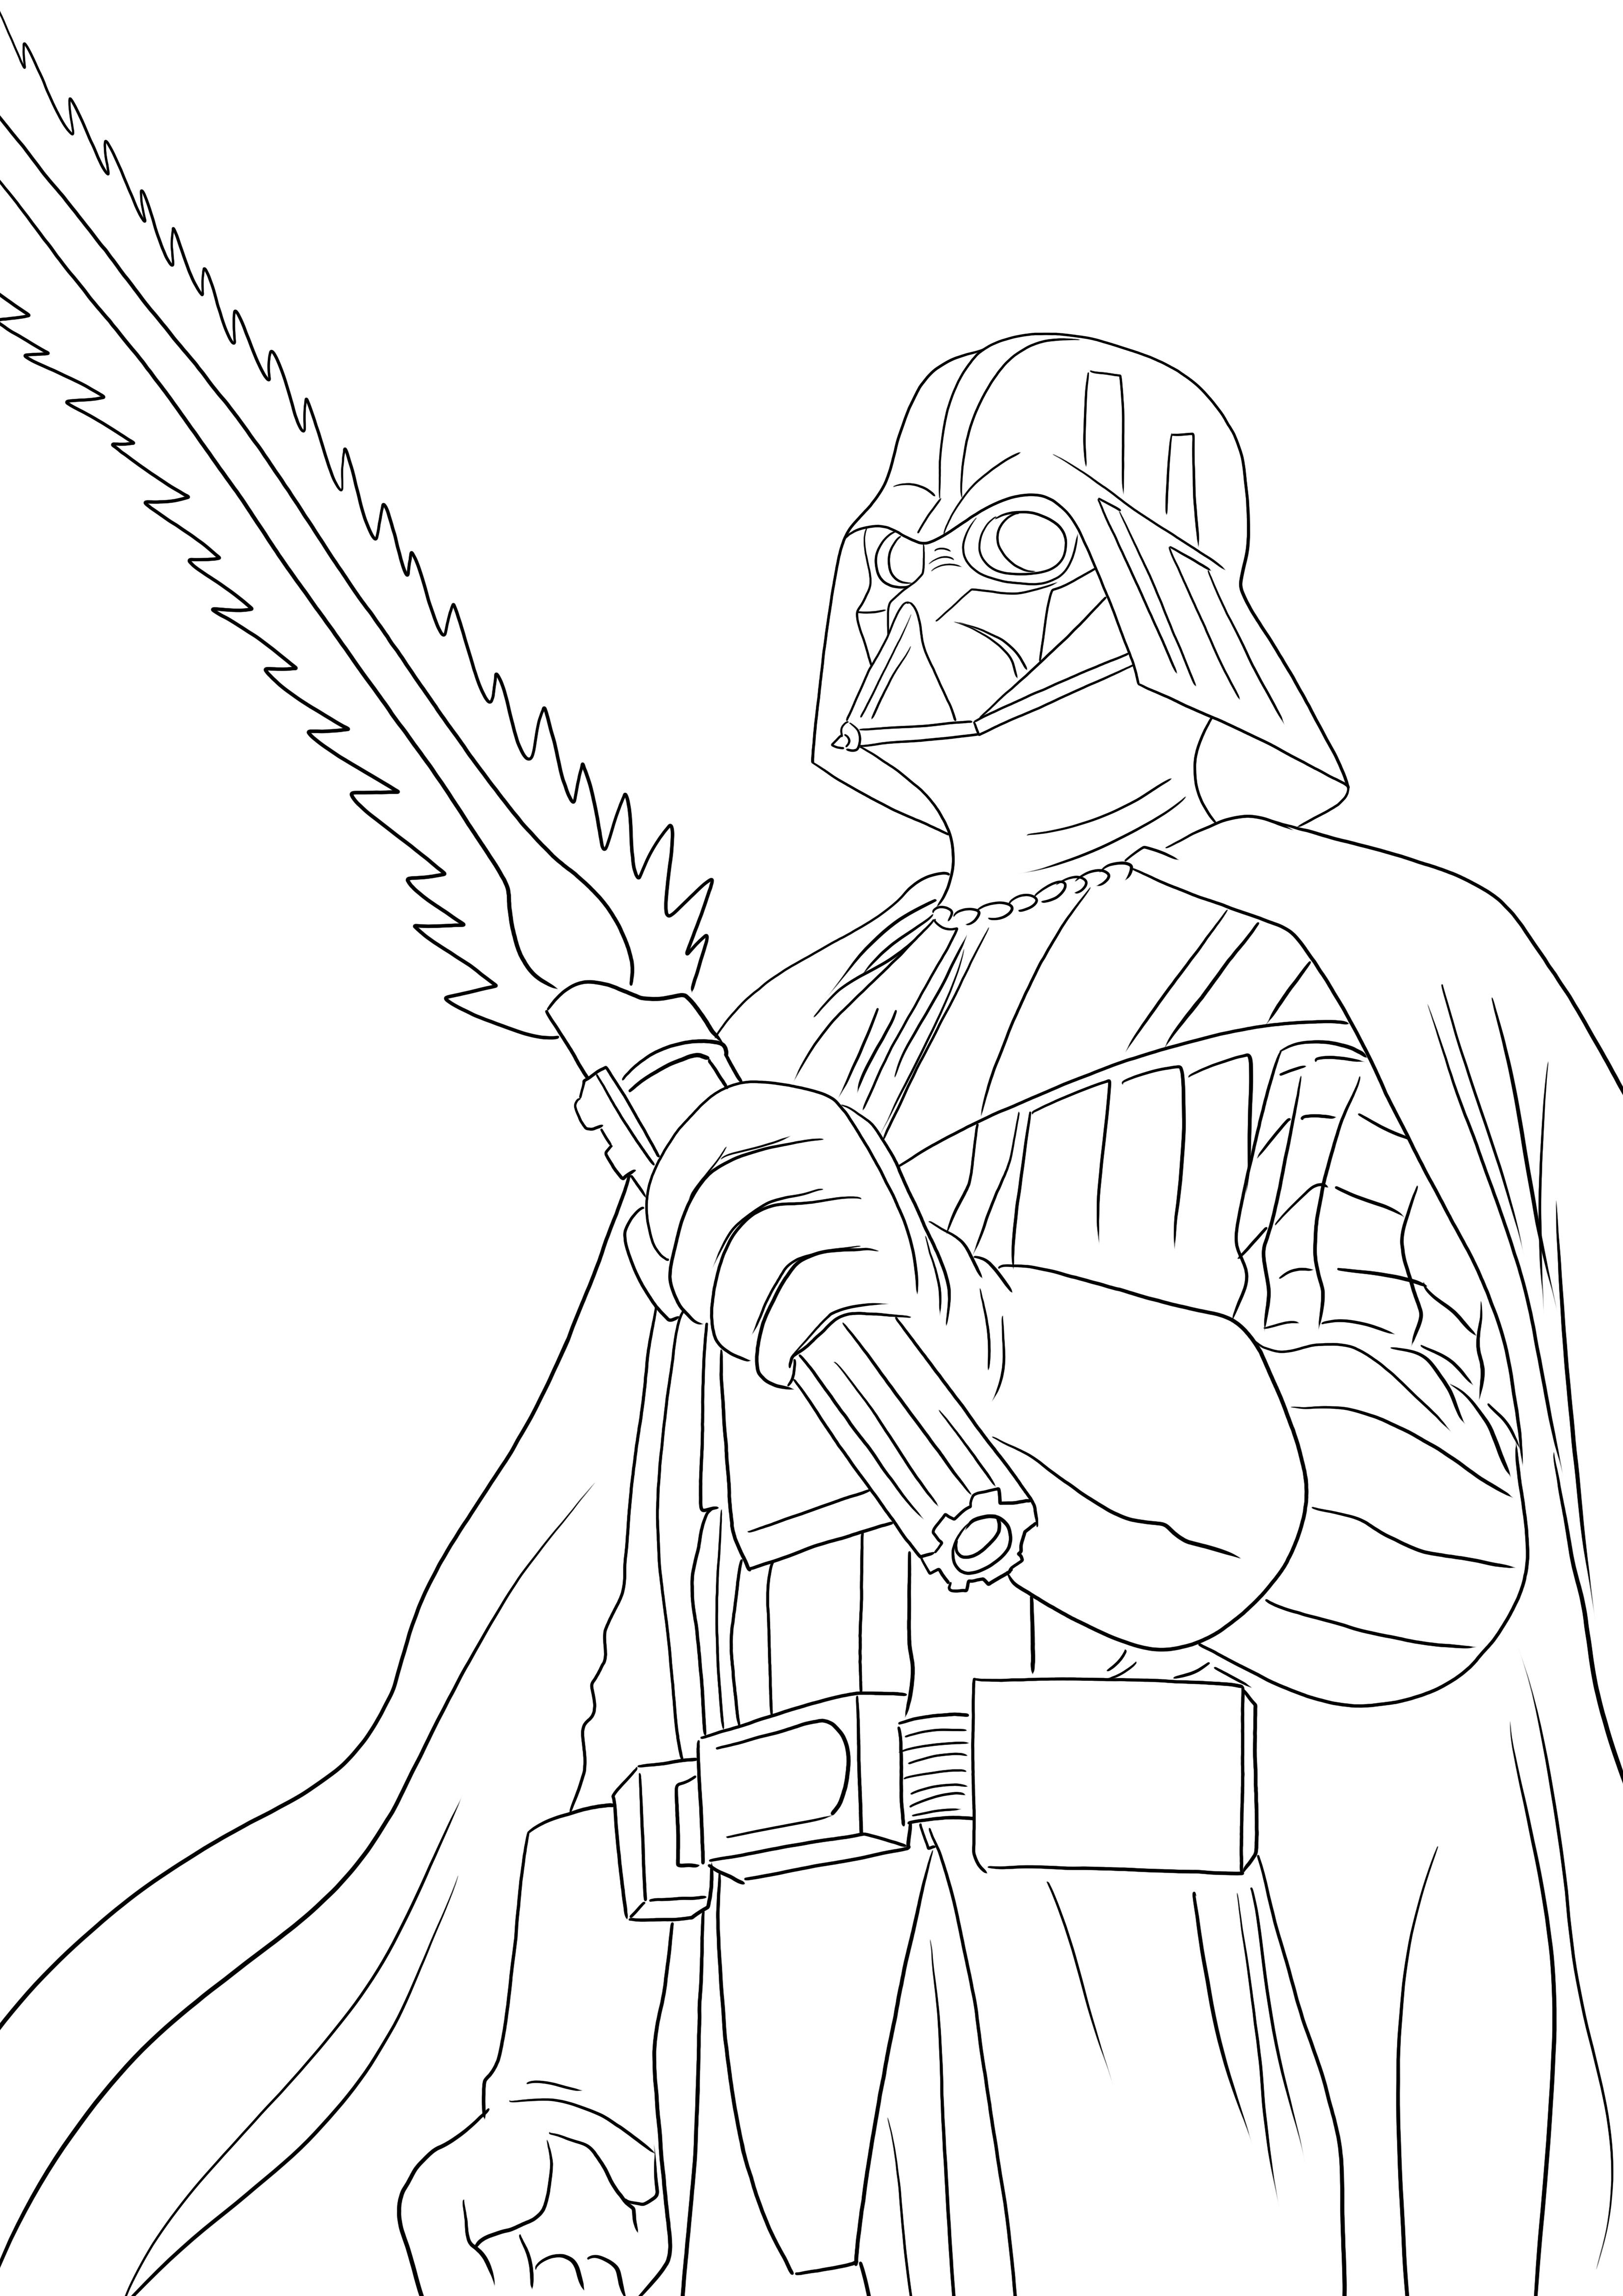 Vilão de Darth Vader, impressão gratuita para colorir para todos os amantes de Star Wars